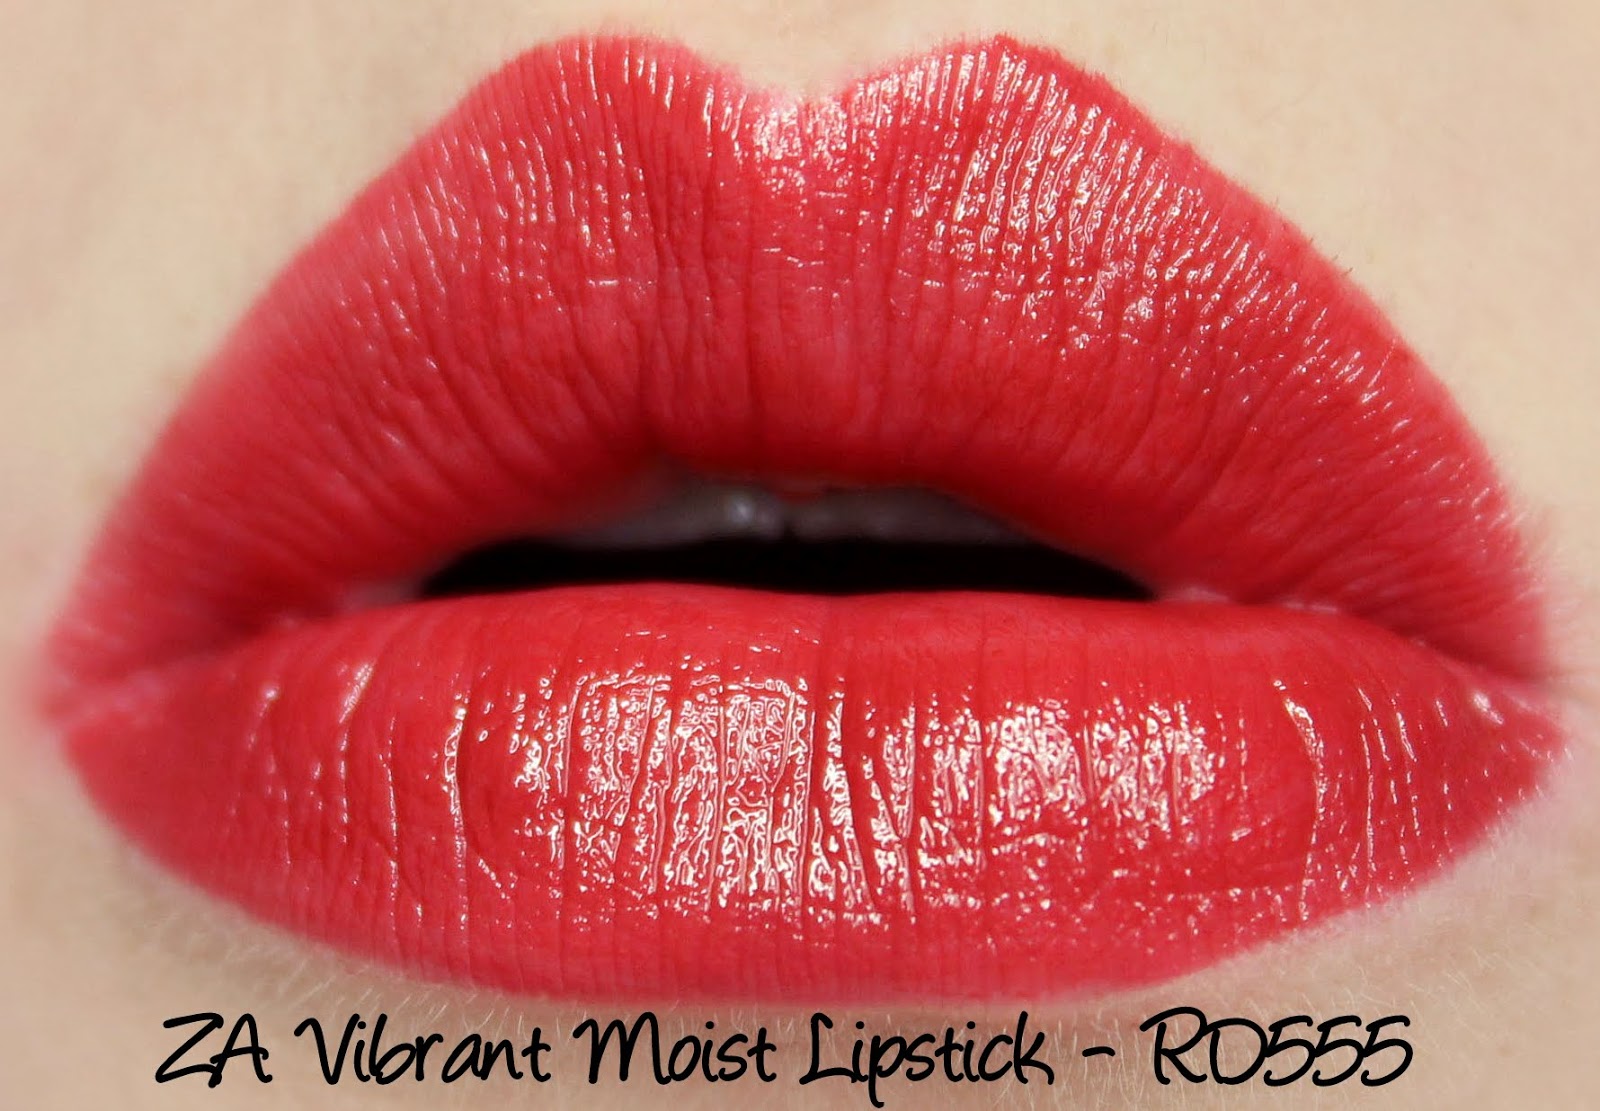 ZA Vibrant Moist Lipstick - RD555 swatches & review